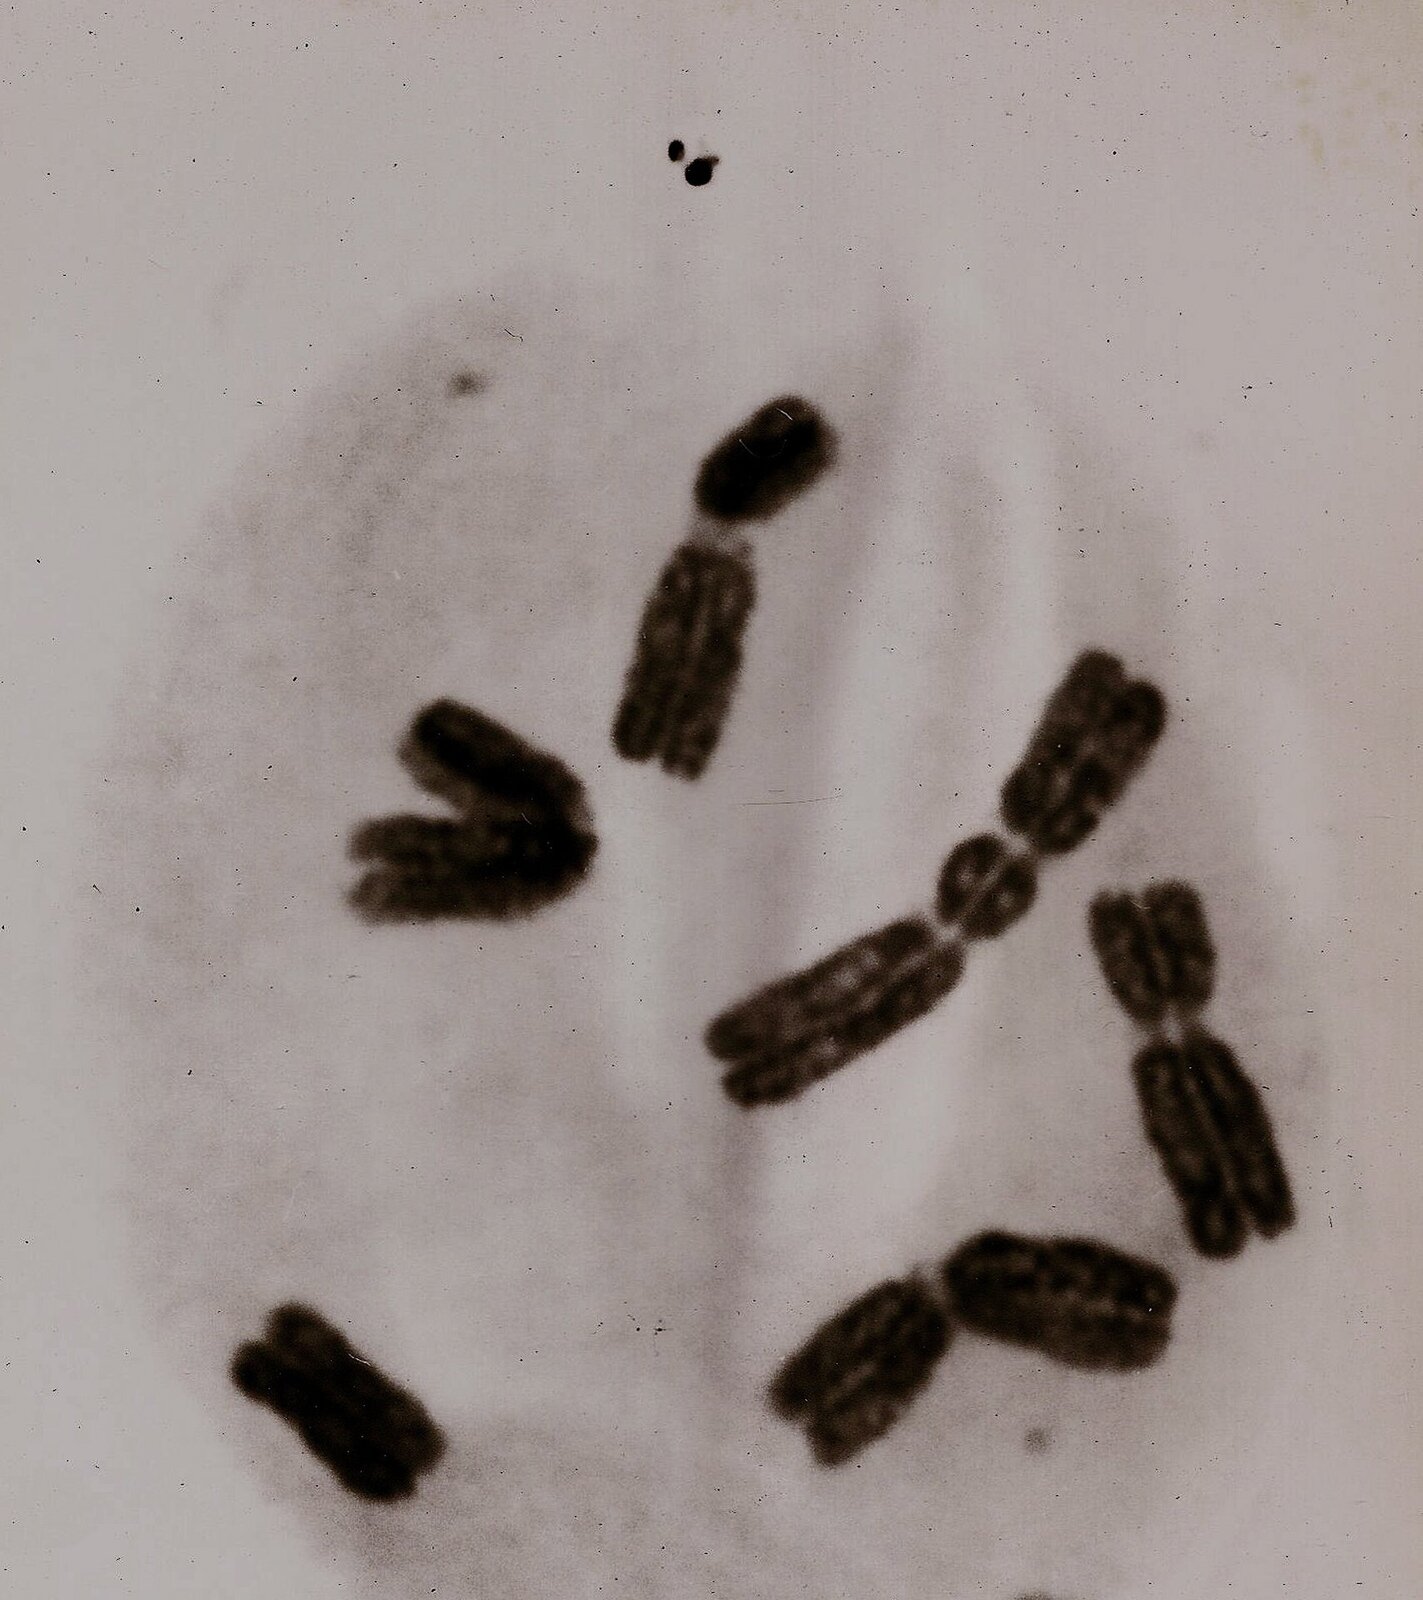 Rys. 8a. Zdjęcie przedstawia obraz mikroskopowy chromosomów człowieka, który uległ napromienieniu. Na szarym tle widać sześć układów chromosomów w postaci podłużnych czarnych brył różnie ułożonych.